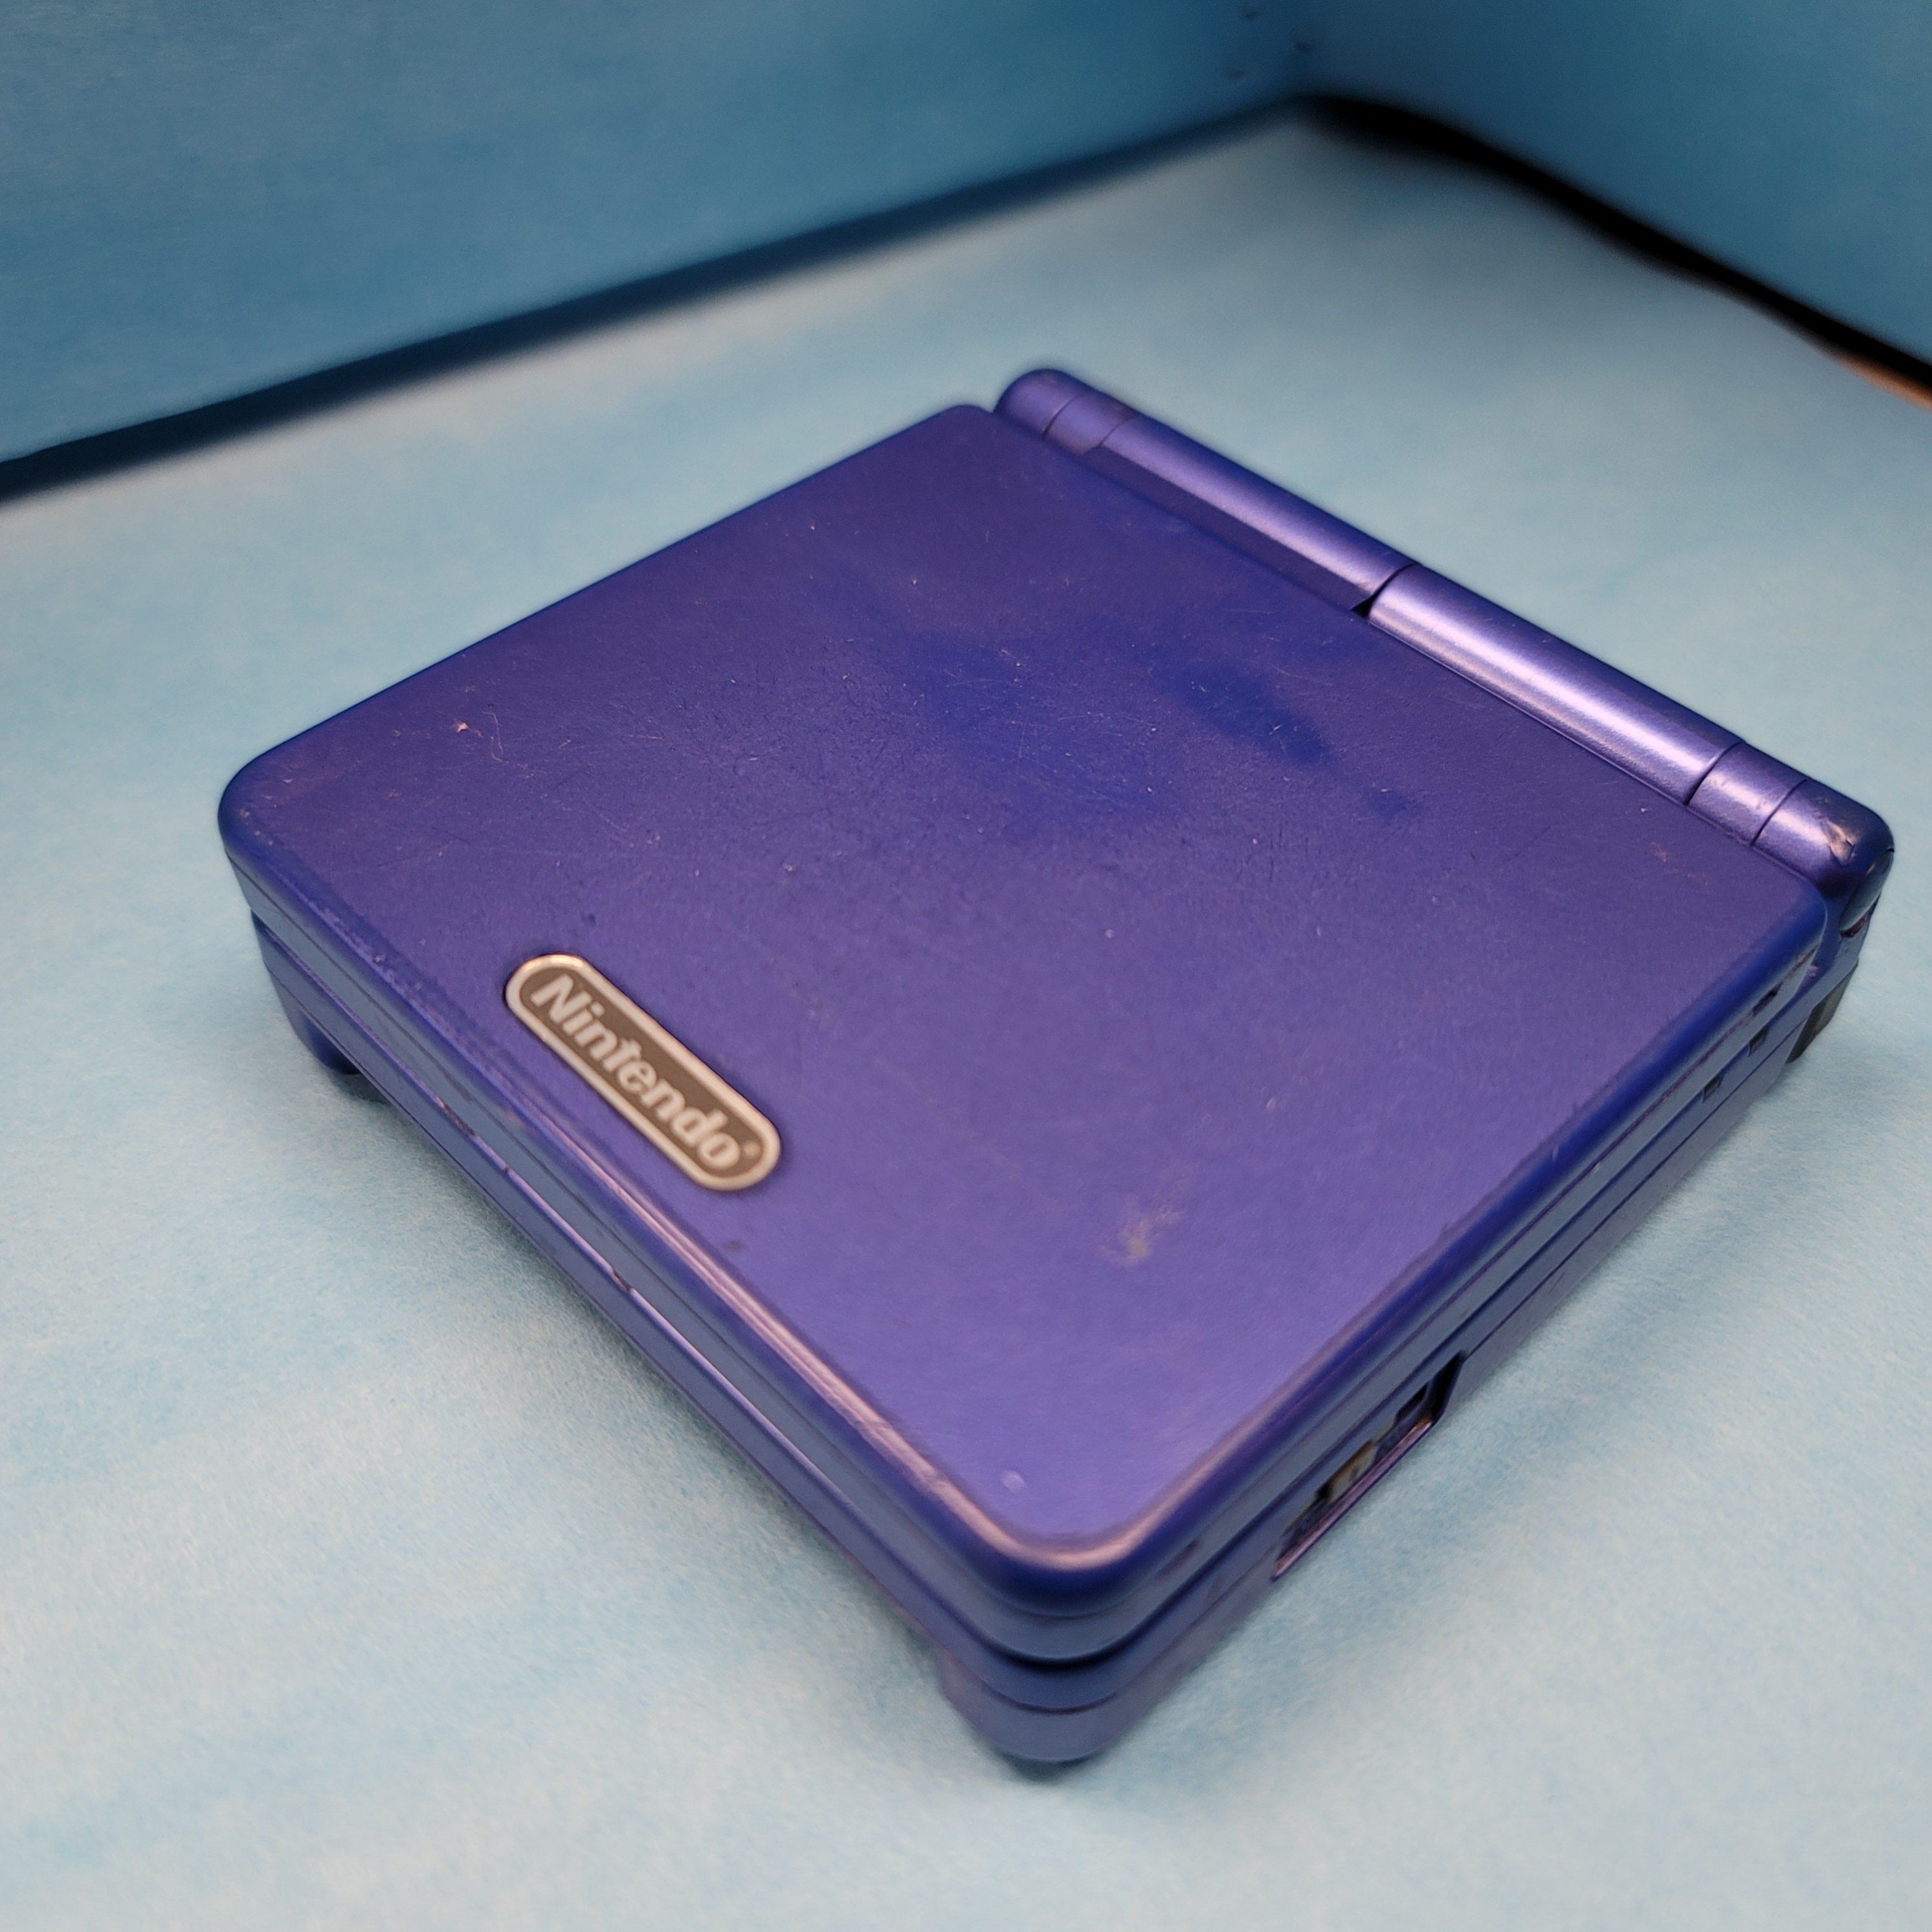 Système Game Boy Advance SP (éclairage avant) (Cobalt / Réduit)